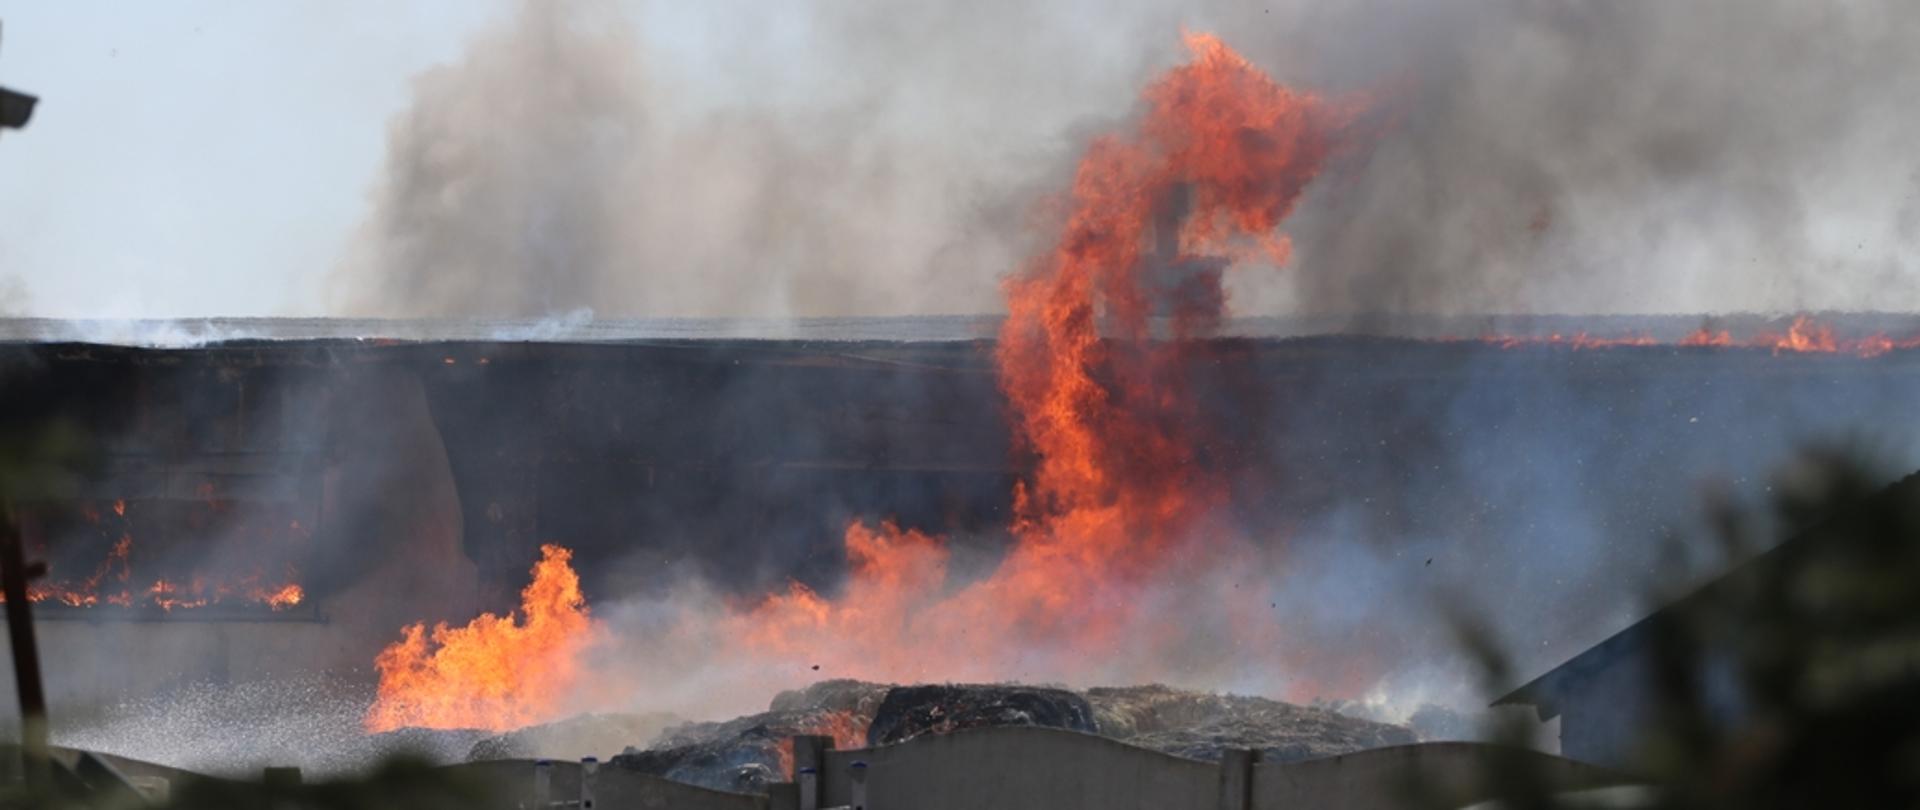 Zdjęcie przedstawia palące się baloty sprasowanej makulatury, ogień rozprzestrzenia się na budynek magazynowy 